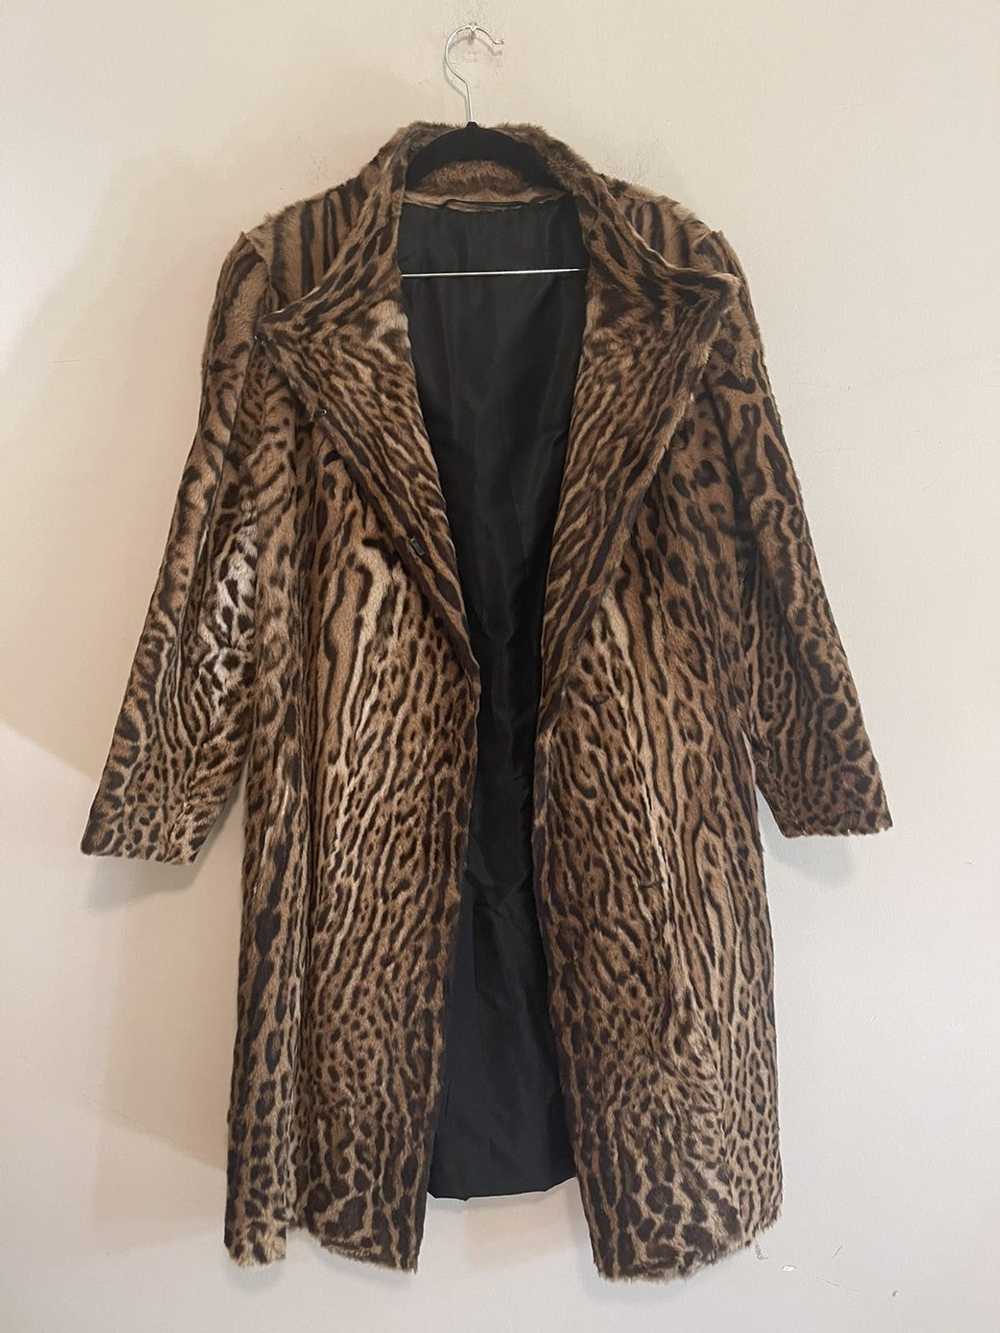 Vintage Vintage Leopard Jacket - image 1